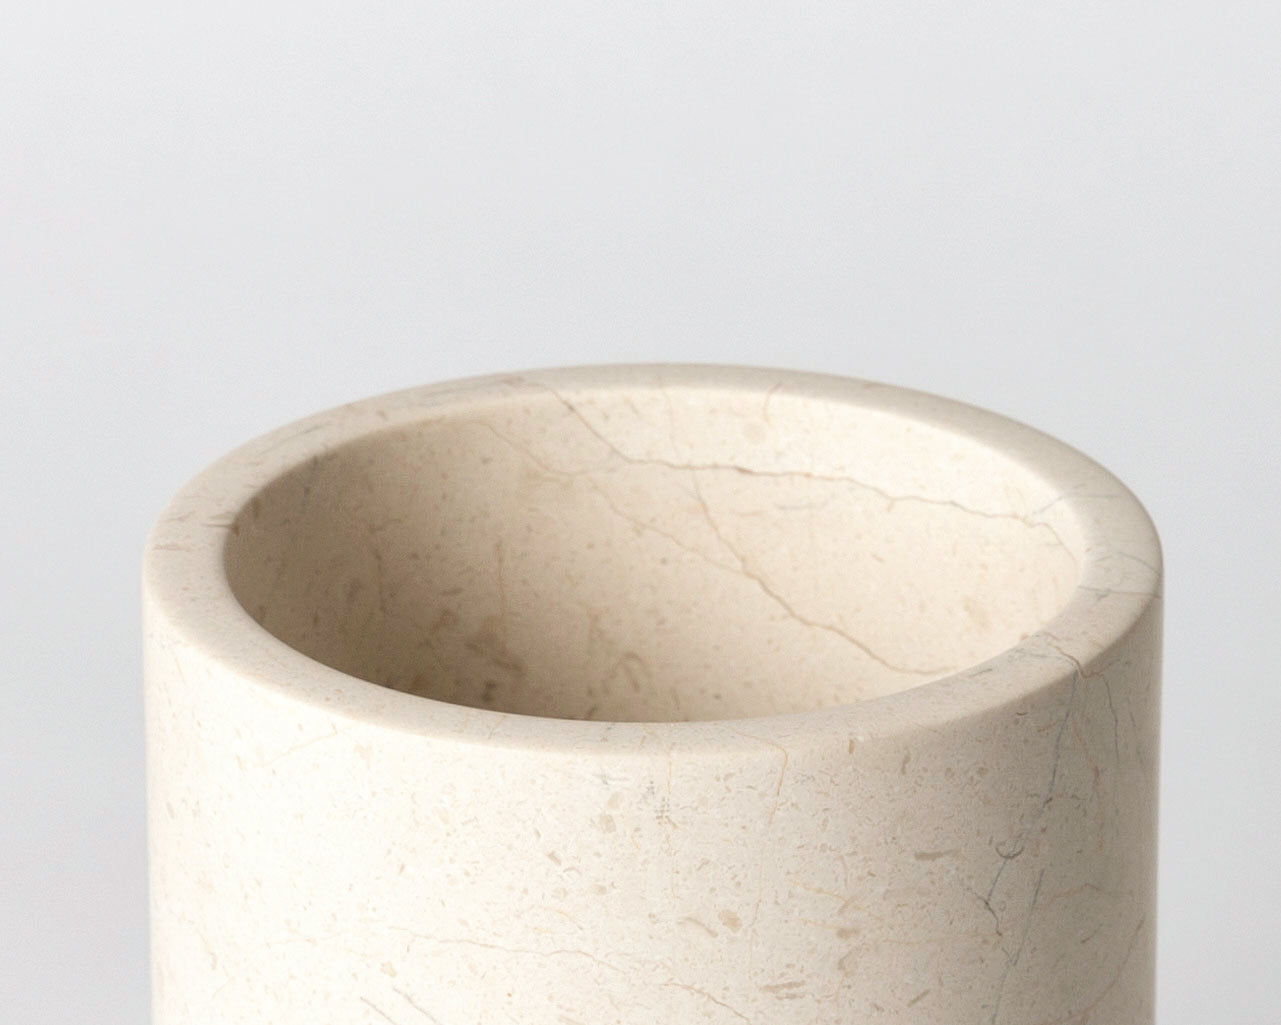 Large Vase, Crema Marfil Marble